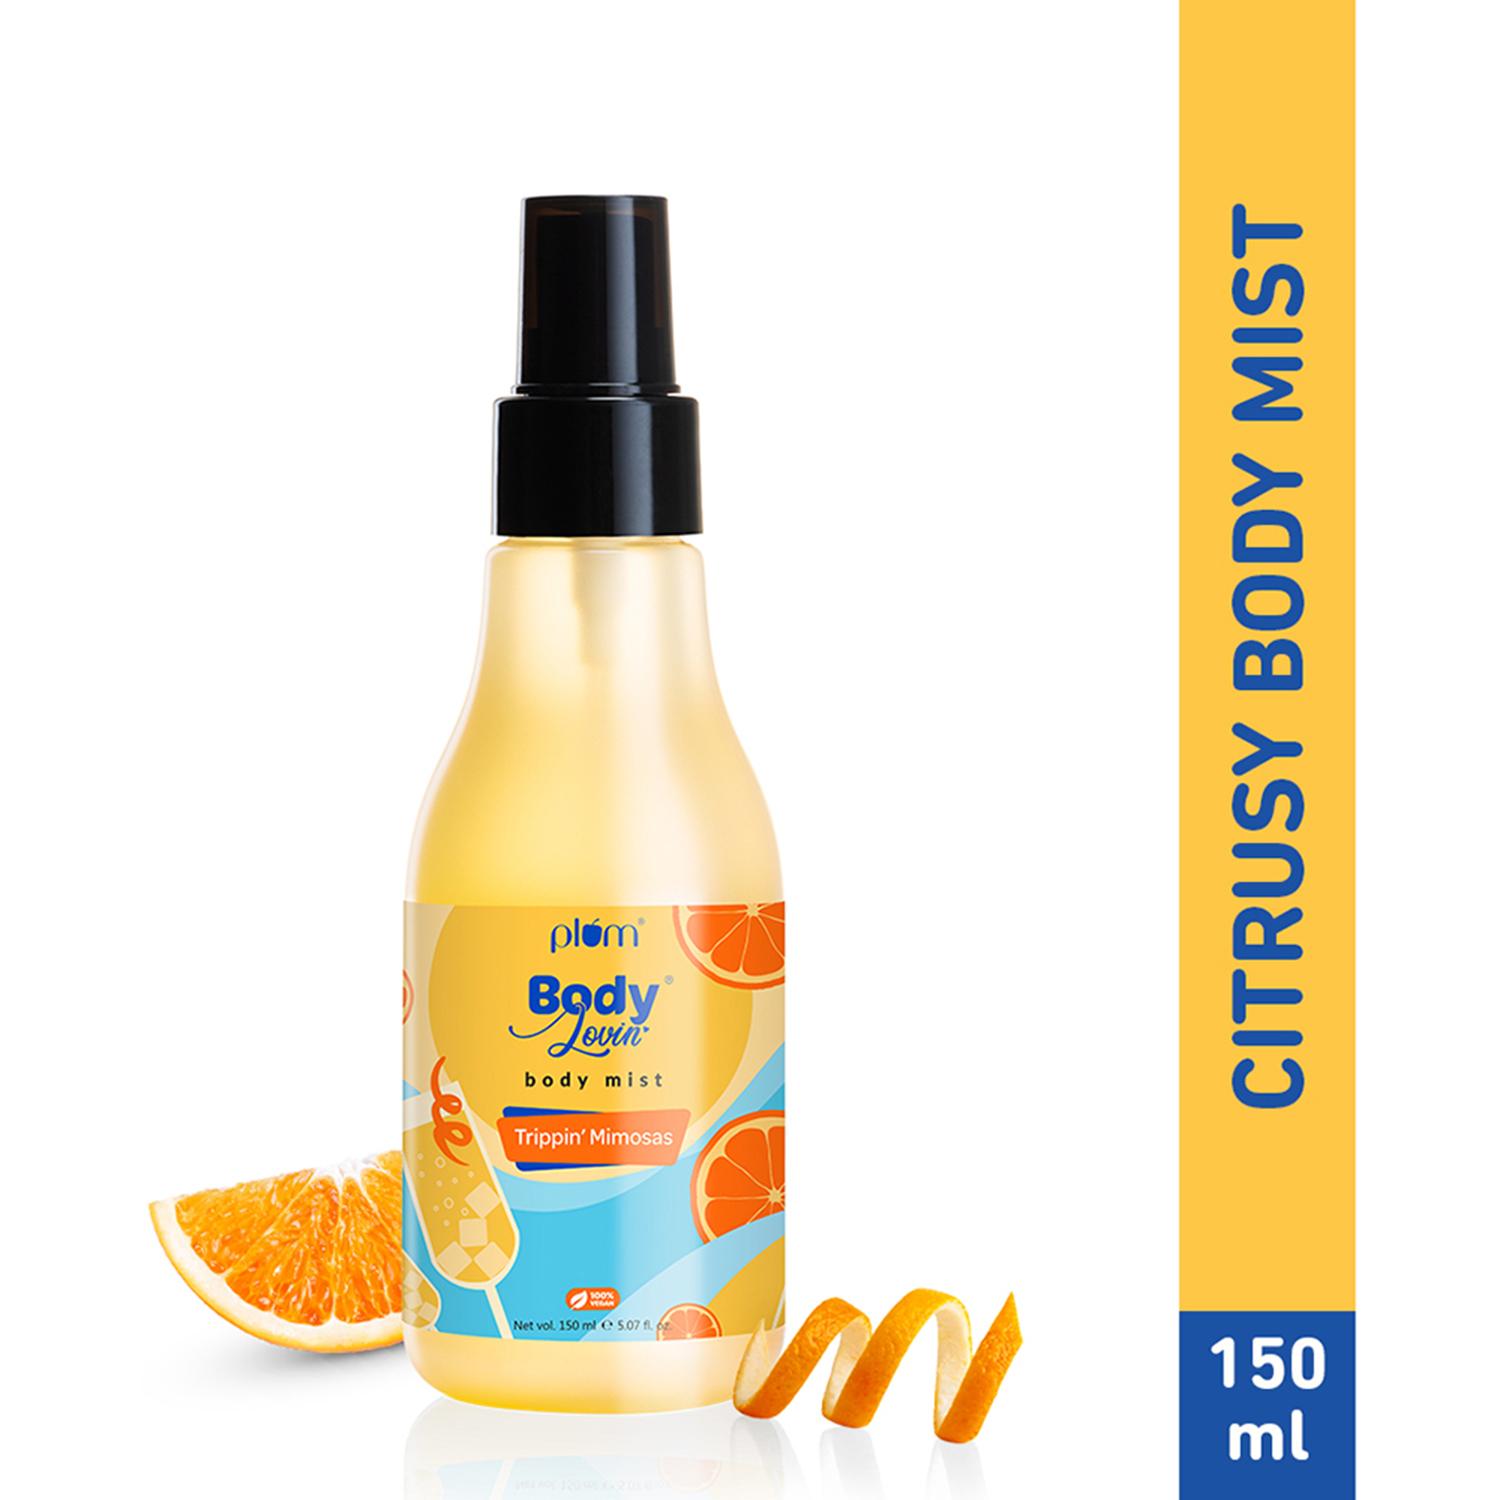 Plum | Plum BodyLovin' Trippin' Mimosas Body Mist | Long Lasting Citrusy Fragrance For Women & Men (150ml)